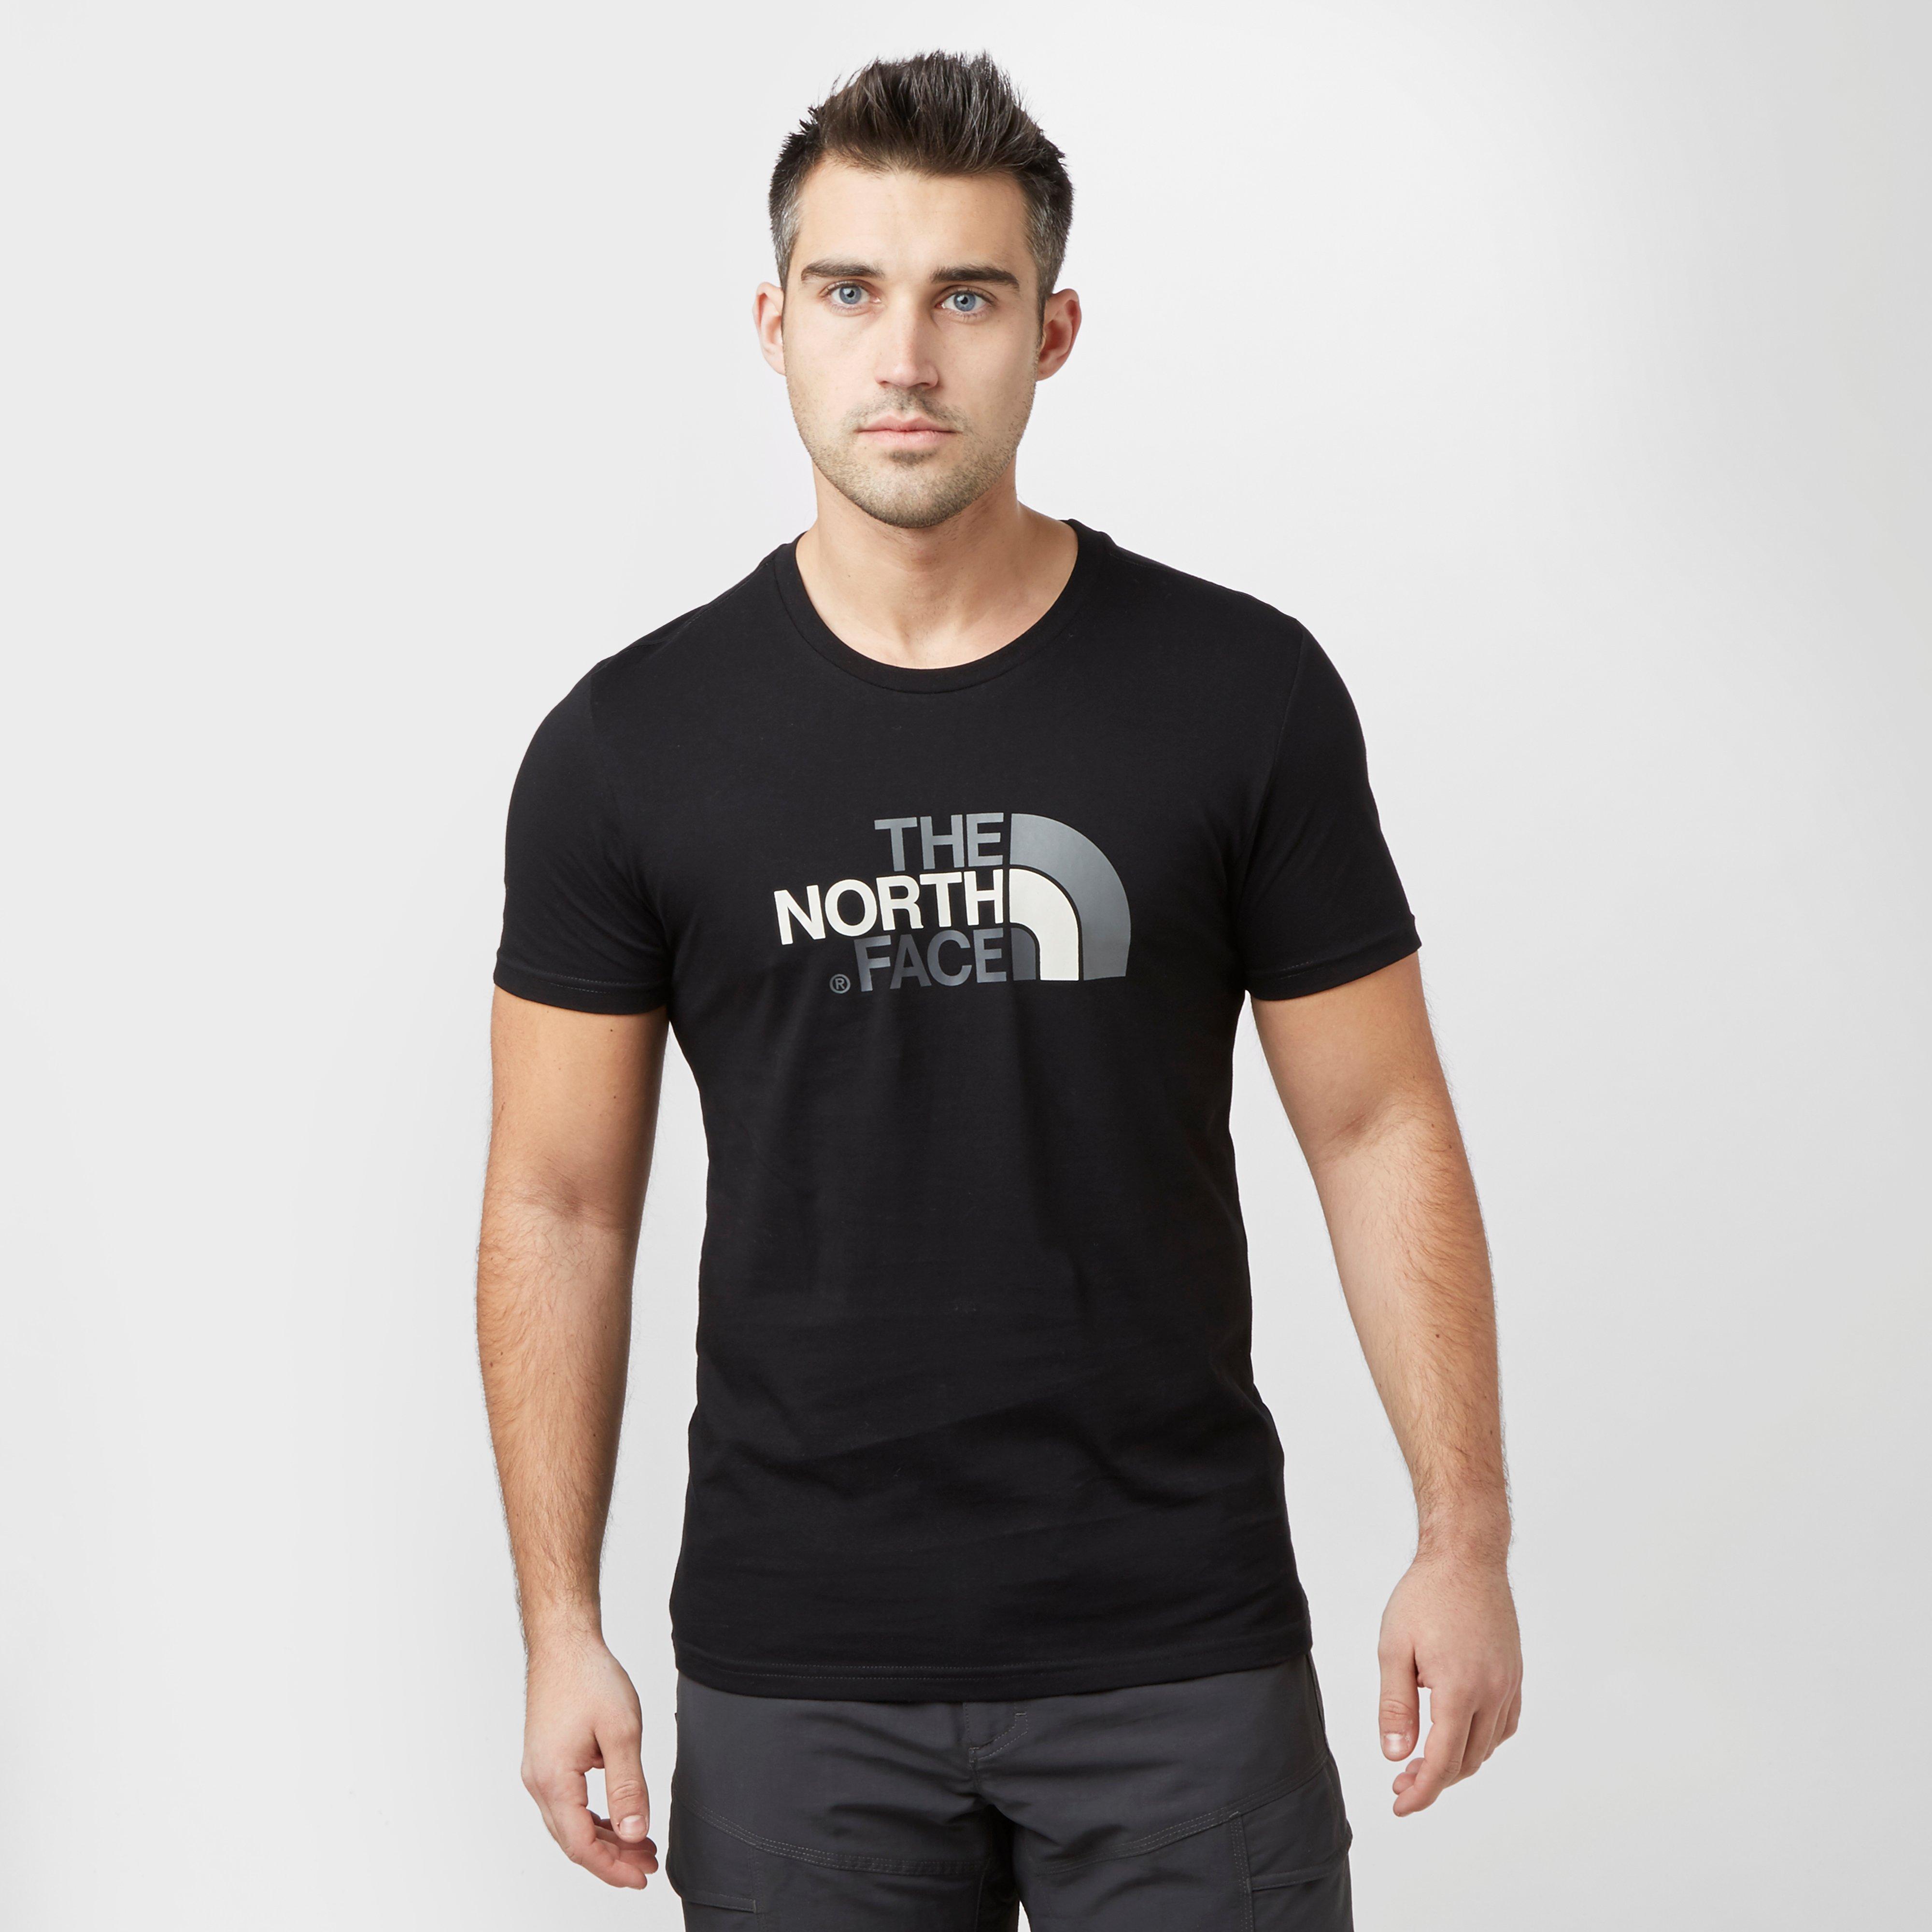 north face mens shirt